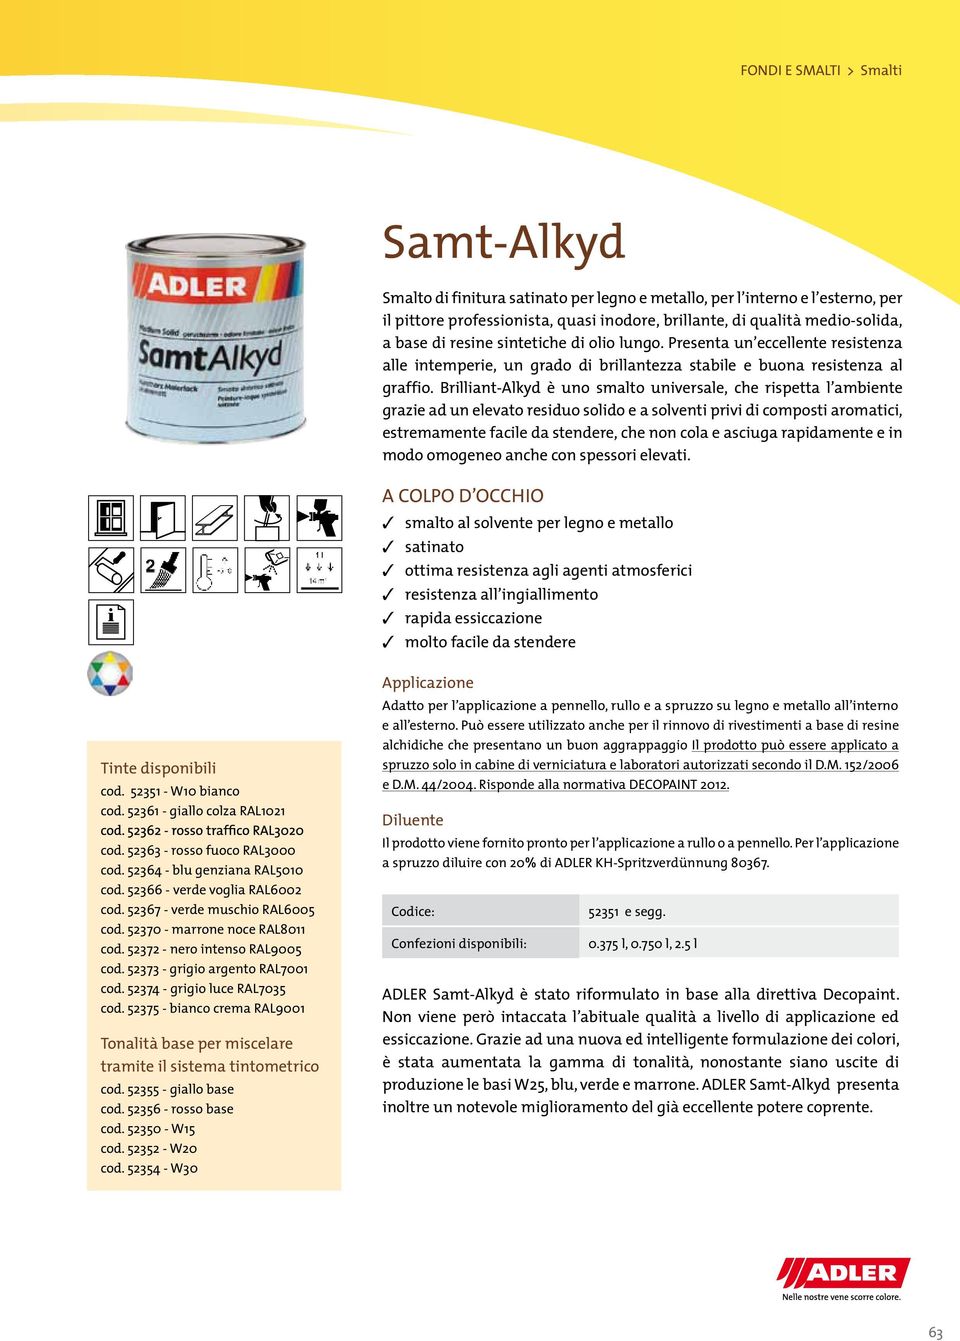 Brilliant-Alkyd è uno smalto universale, che rispetta l ambiente grazie ad un elevato residuo solido e a solventi privi di composti aromatici, estremamente facile da stendere, che non cola e asciuga